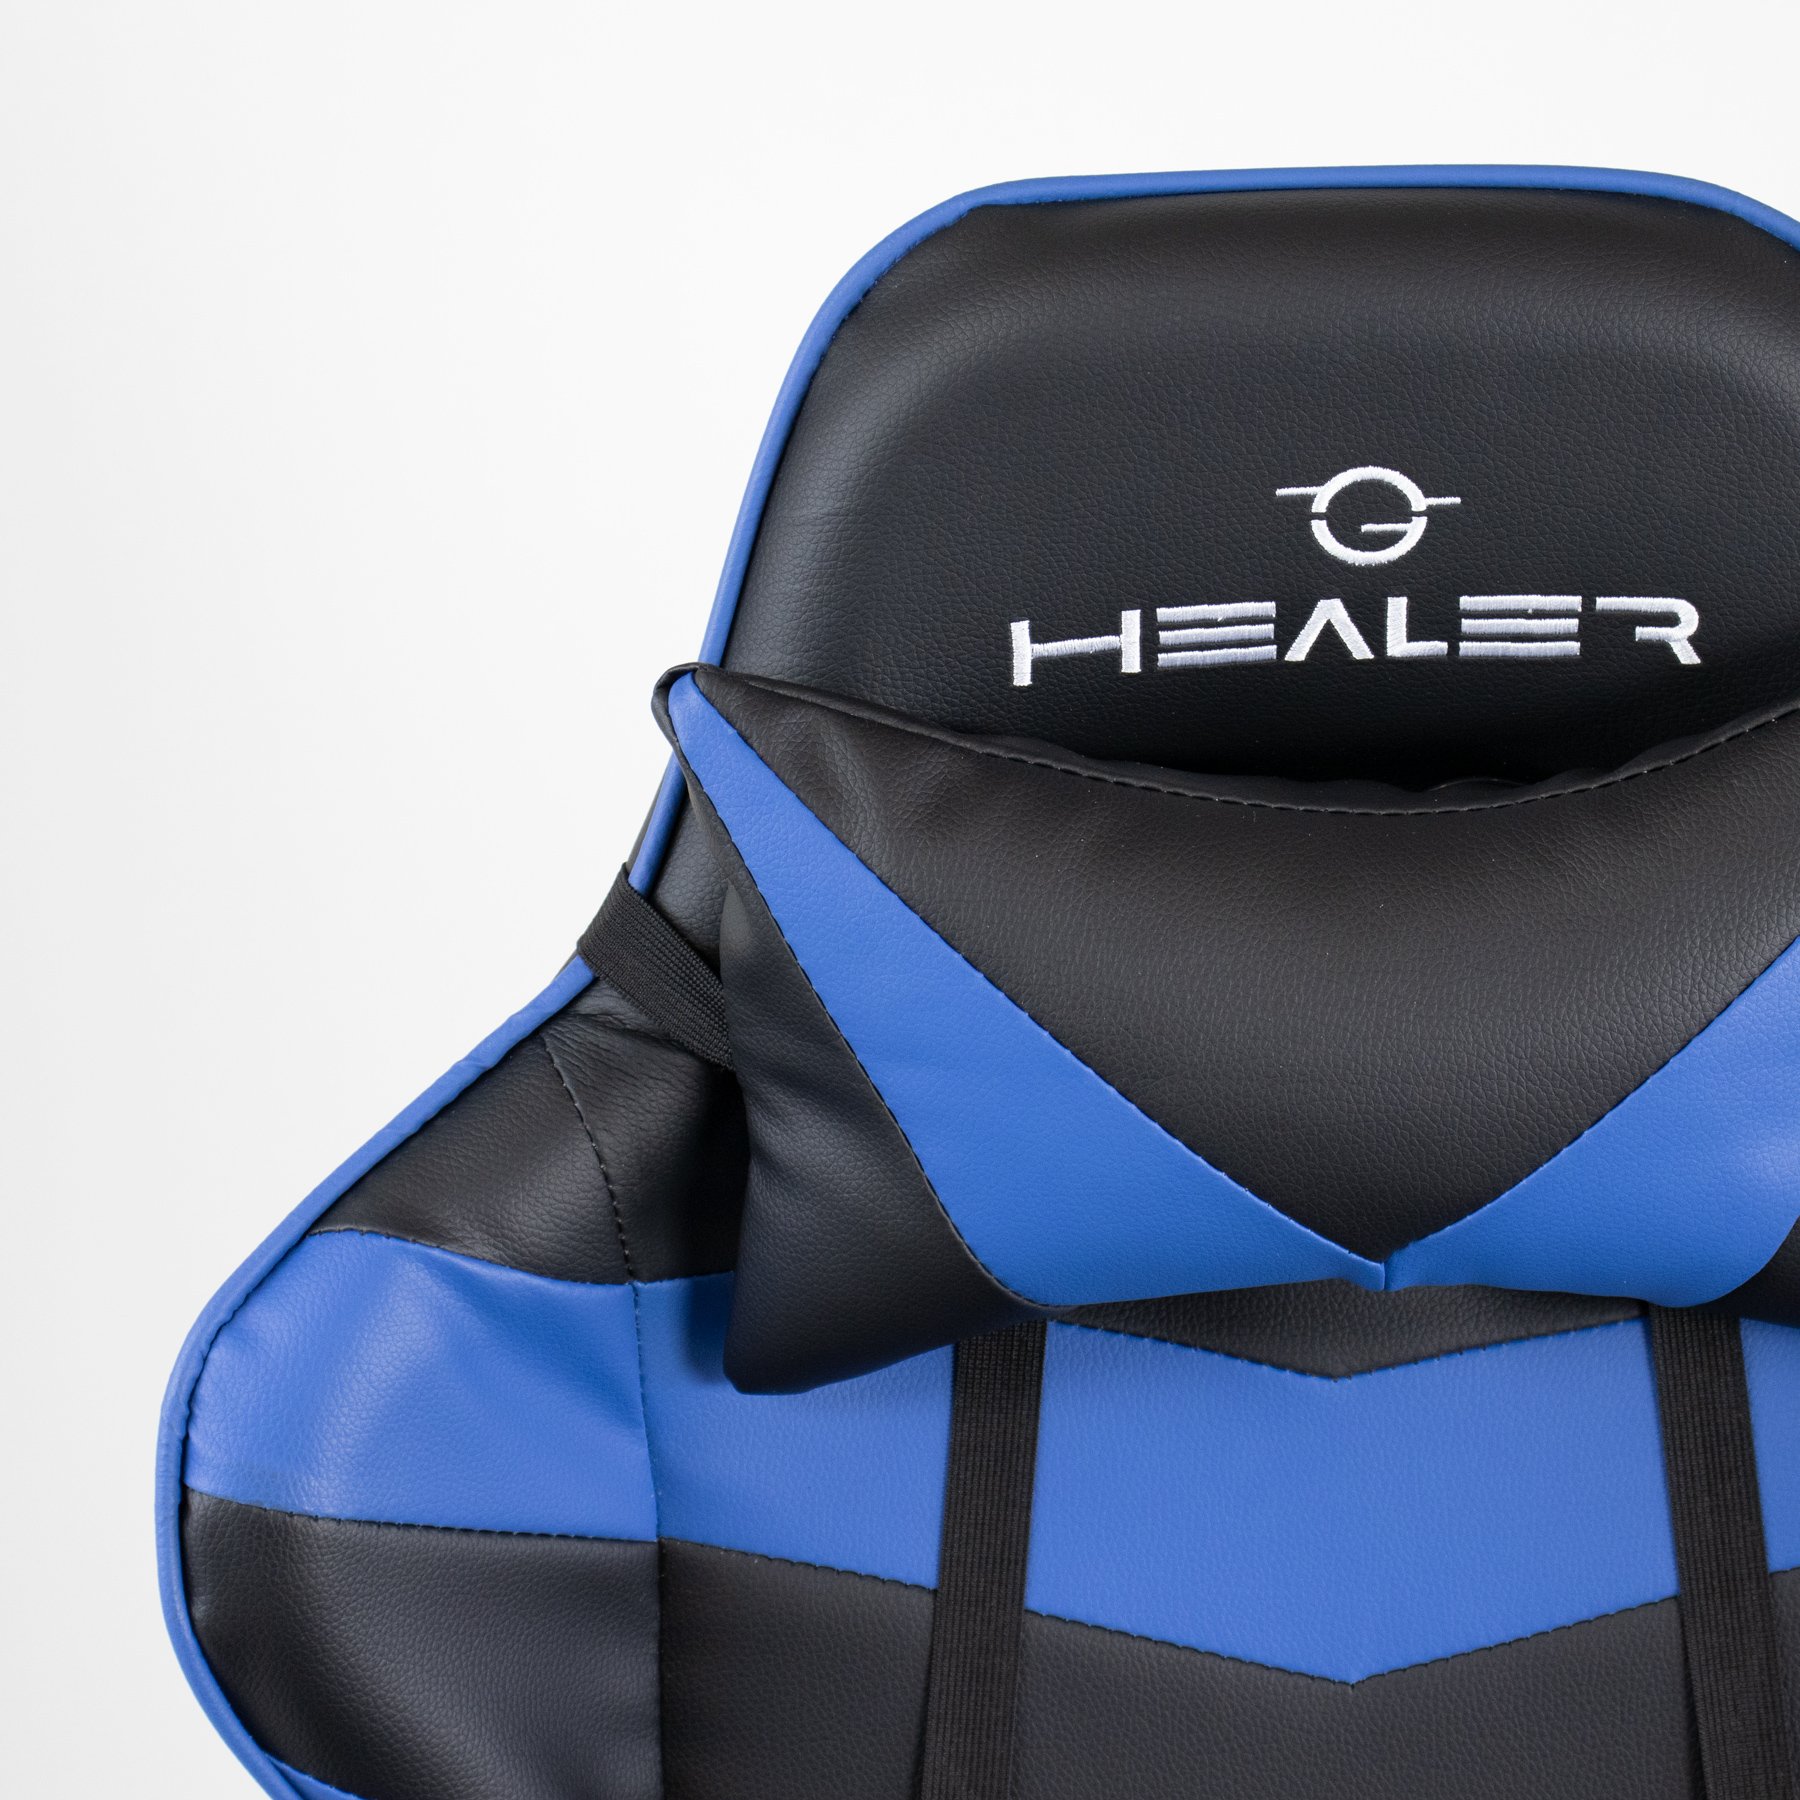 Cadeira Gamer Azul e Preto Healer Level Reclinável Giratória com Apoio de Pés - 8